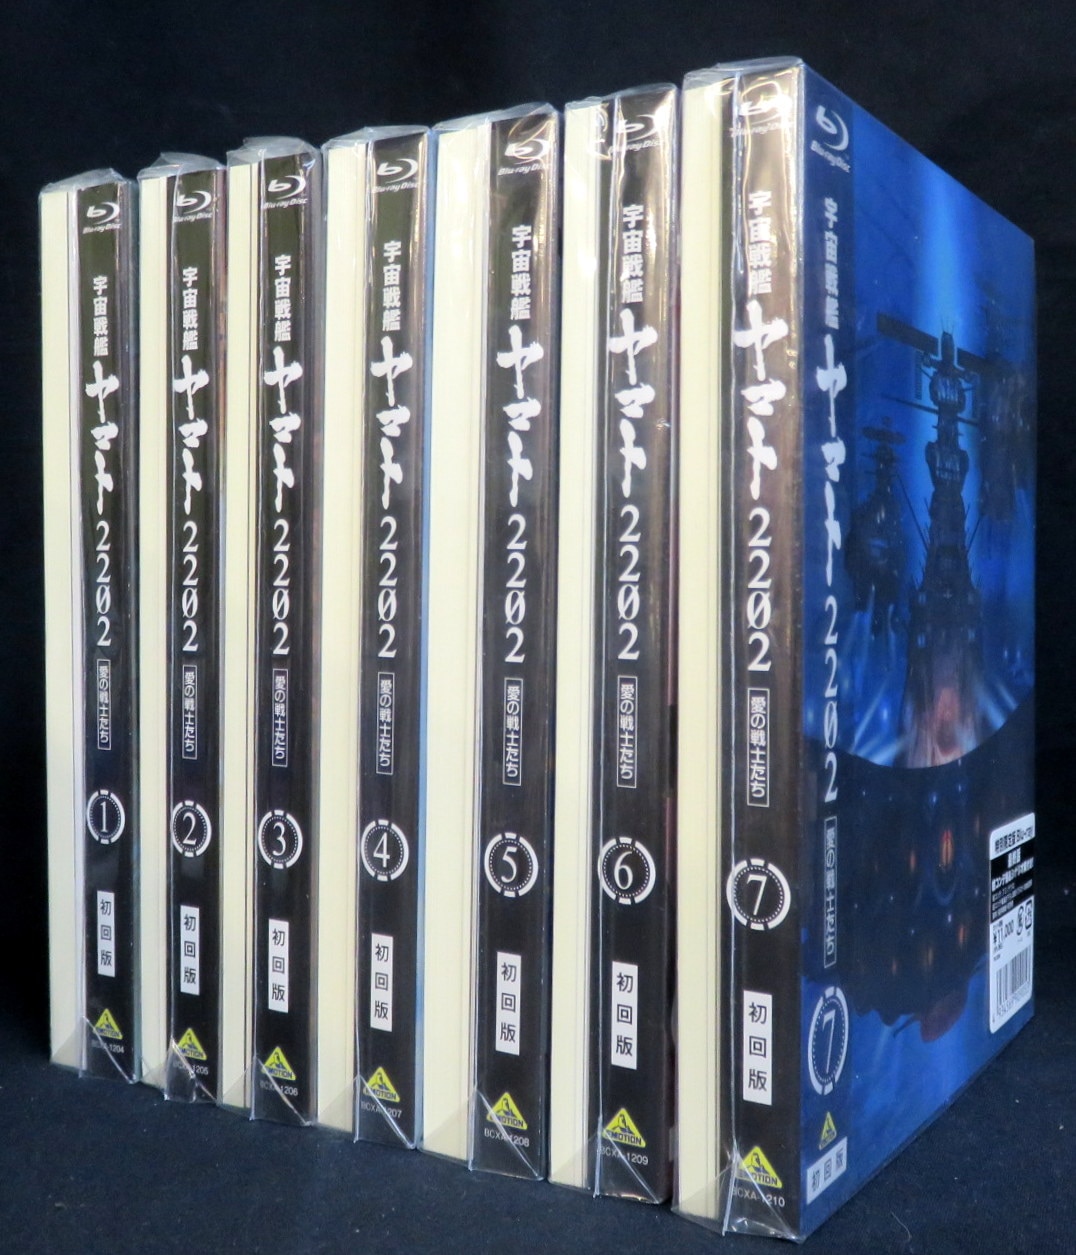 Blu-ray 宇宙戦艦ヤマト2202 初回版 全7巻セット-